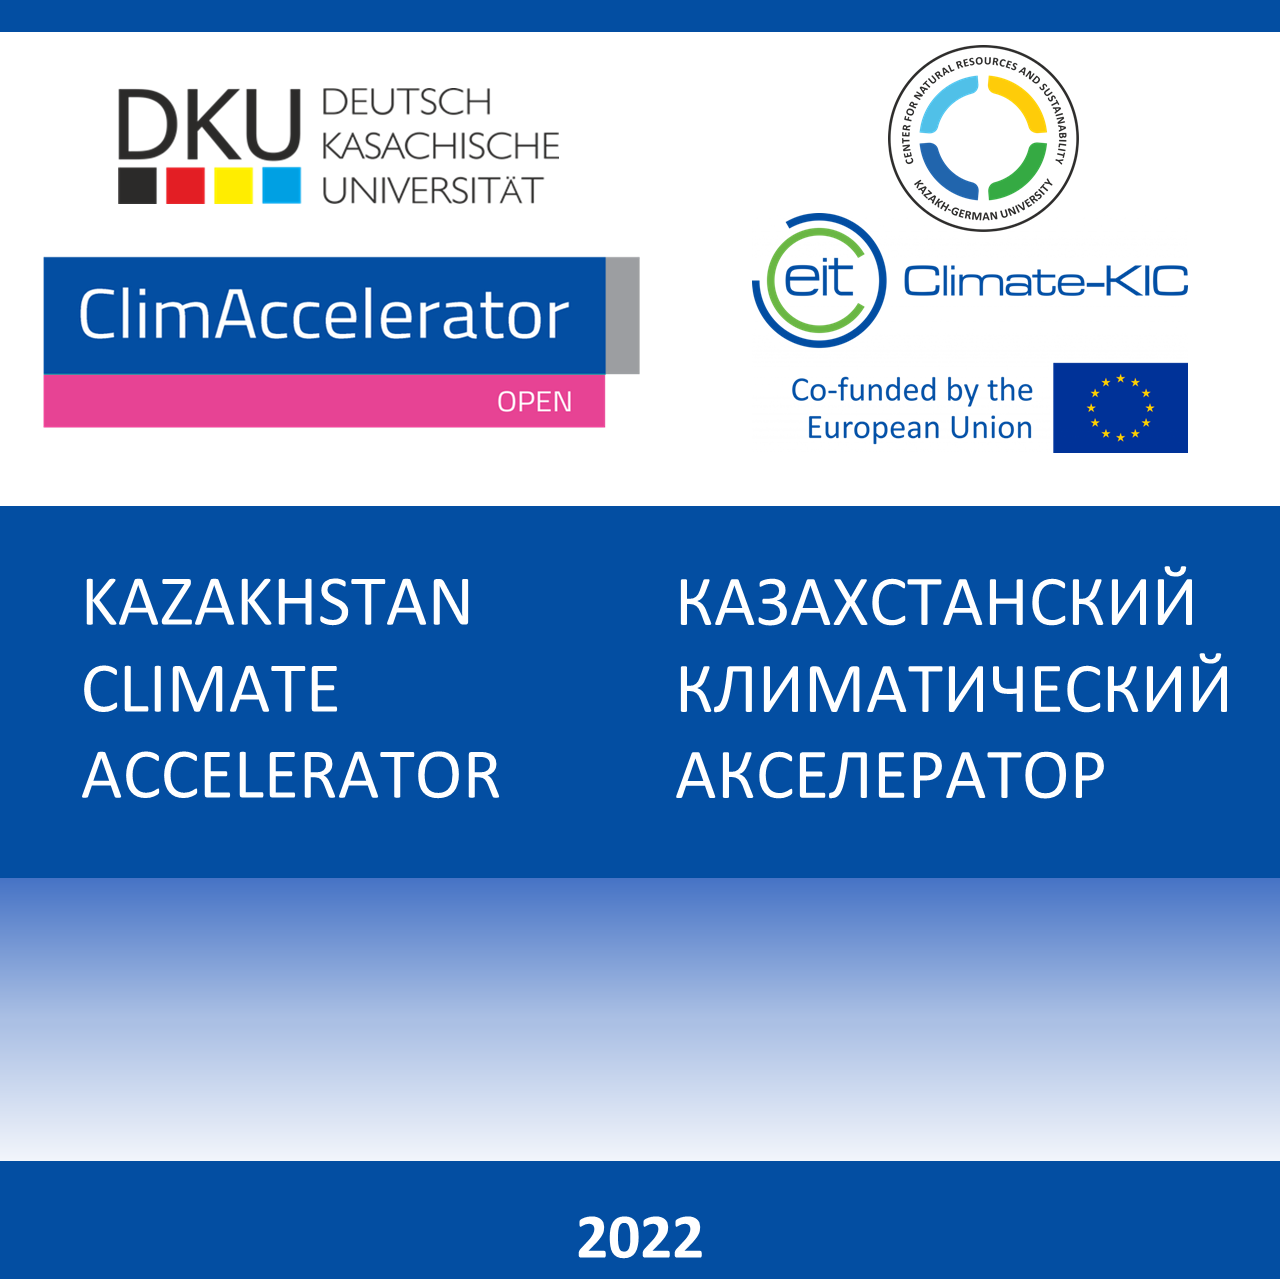 Казахстанский климатический акселератор 2022 г.